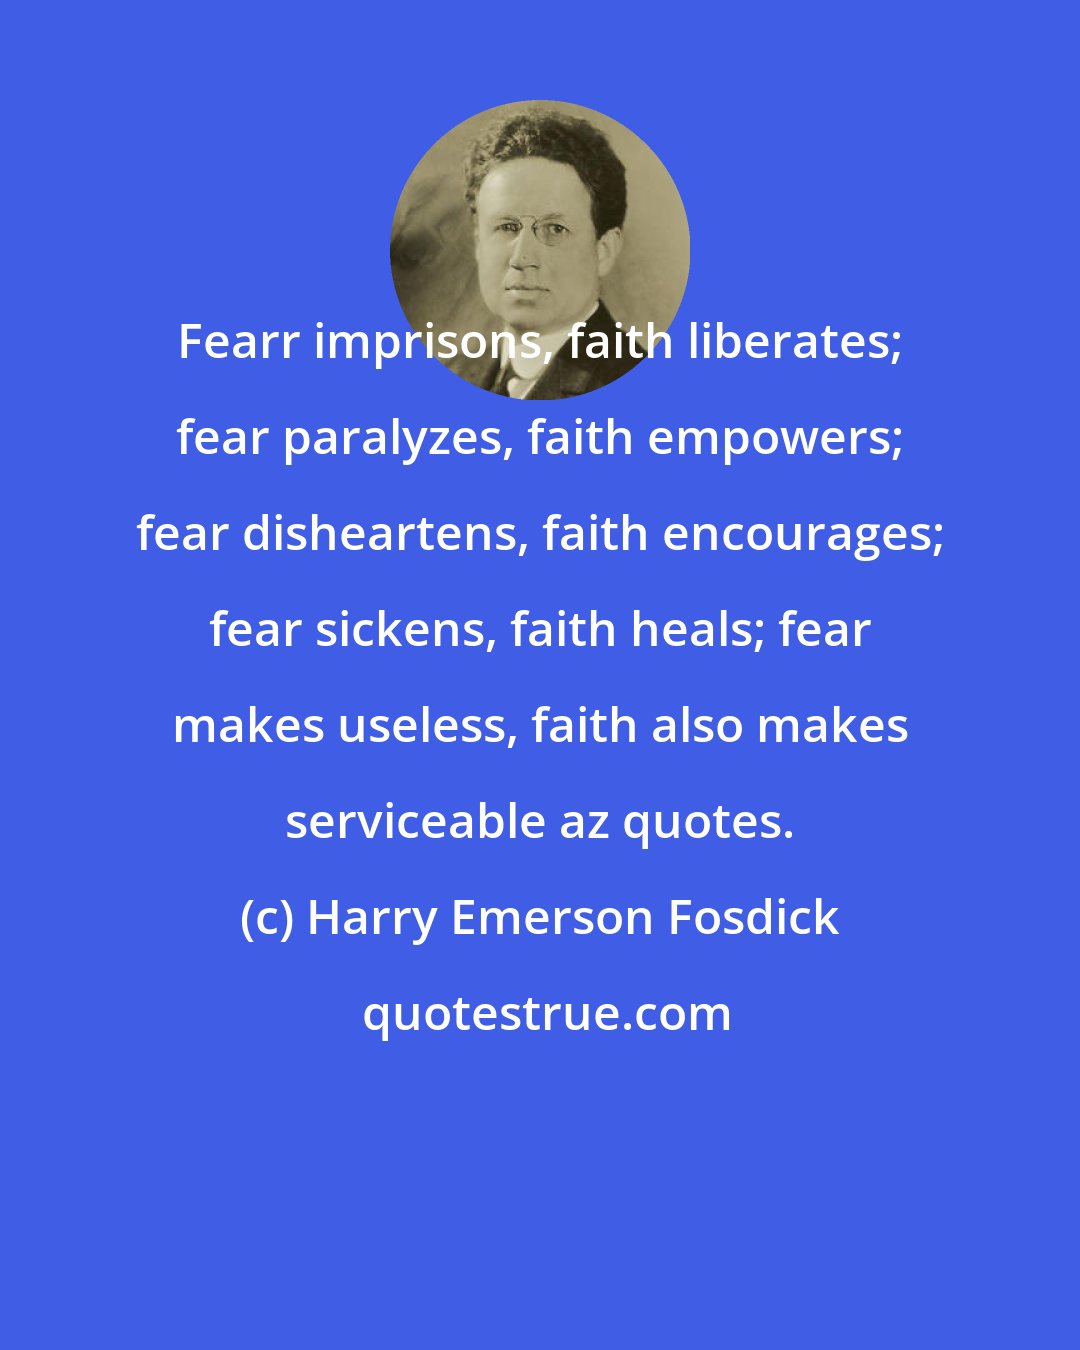 Harry Emerson Fosdick: Fearr imprisons, faith liberates; fear paralyzes, faith empowers; fear disheartens, faith encourages; fear sickens, faith heals; fear makes useless, faith also makes serviceable az quotes.